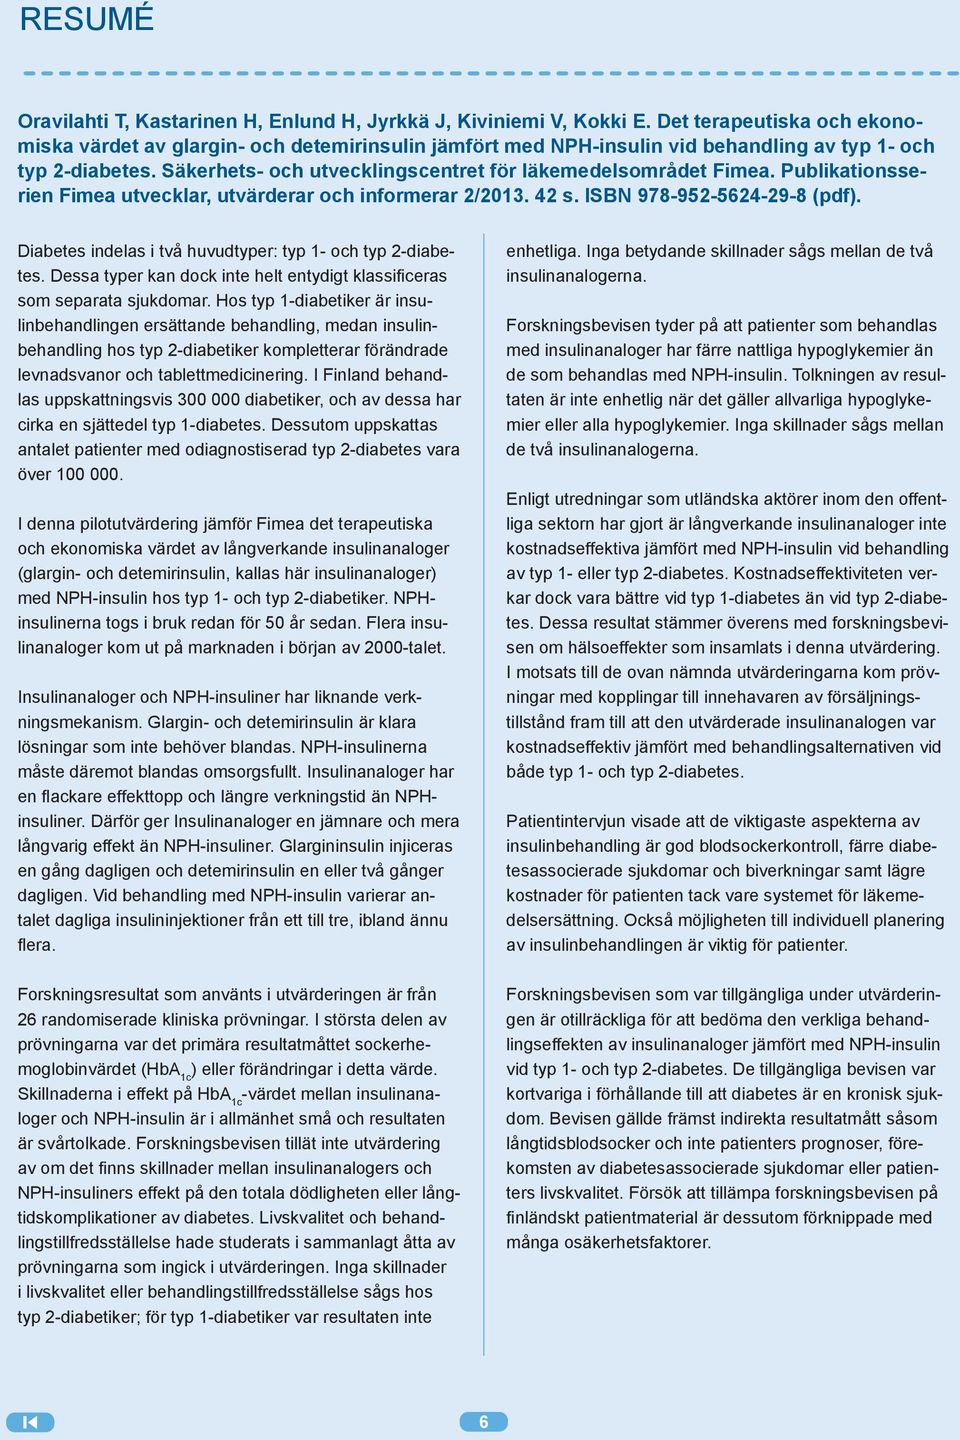 Säkerhets- och utvecklingscentret för läkemedelsområdet Fimea. Publikationsserien Fimea utvecklar, utvärderar och informerar 2/2013. 42 s. ISBN 978-952-5624-29-8 (pdf).